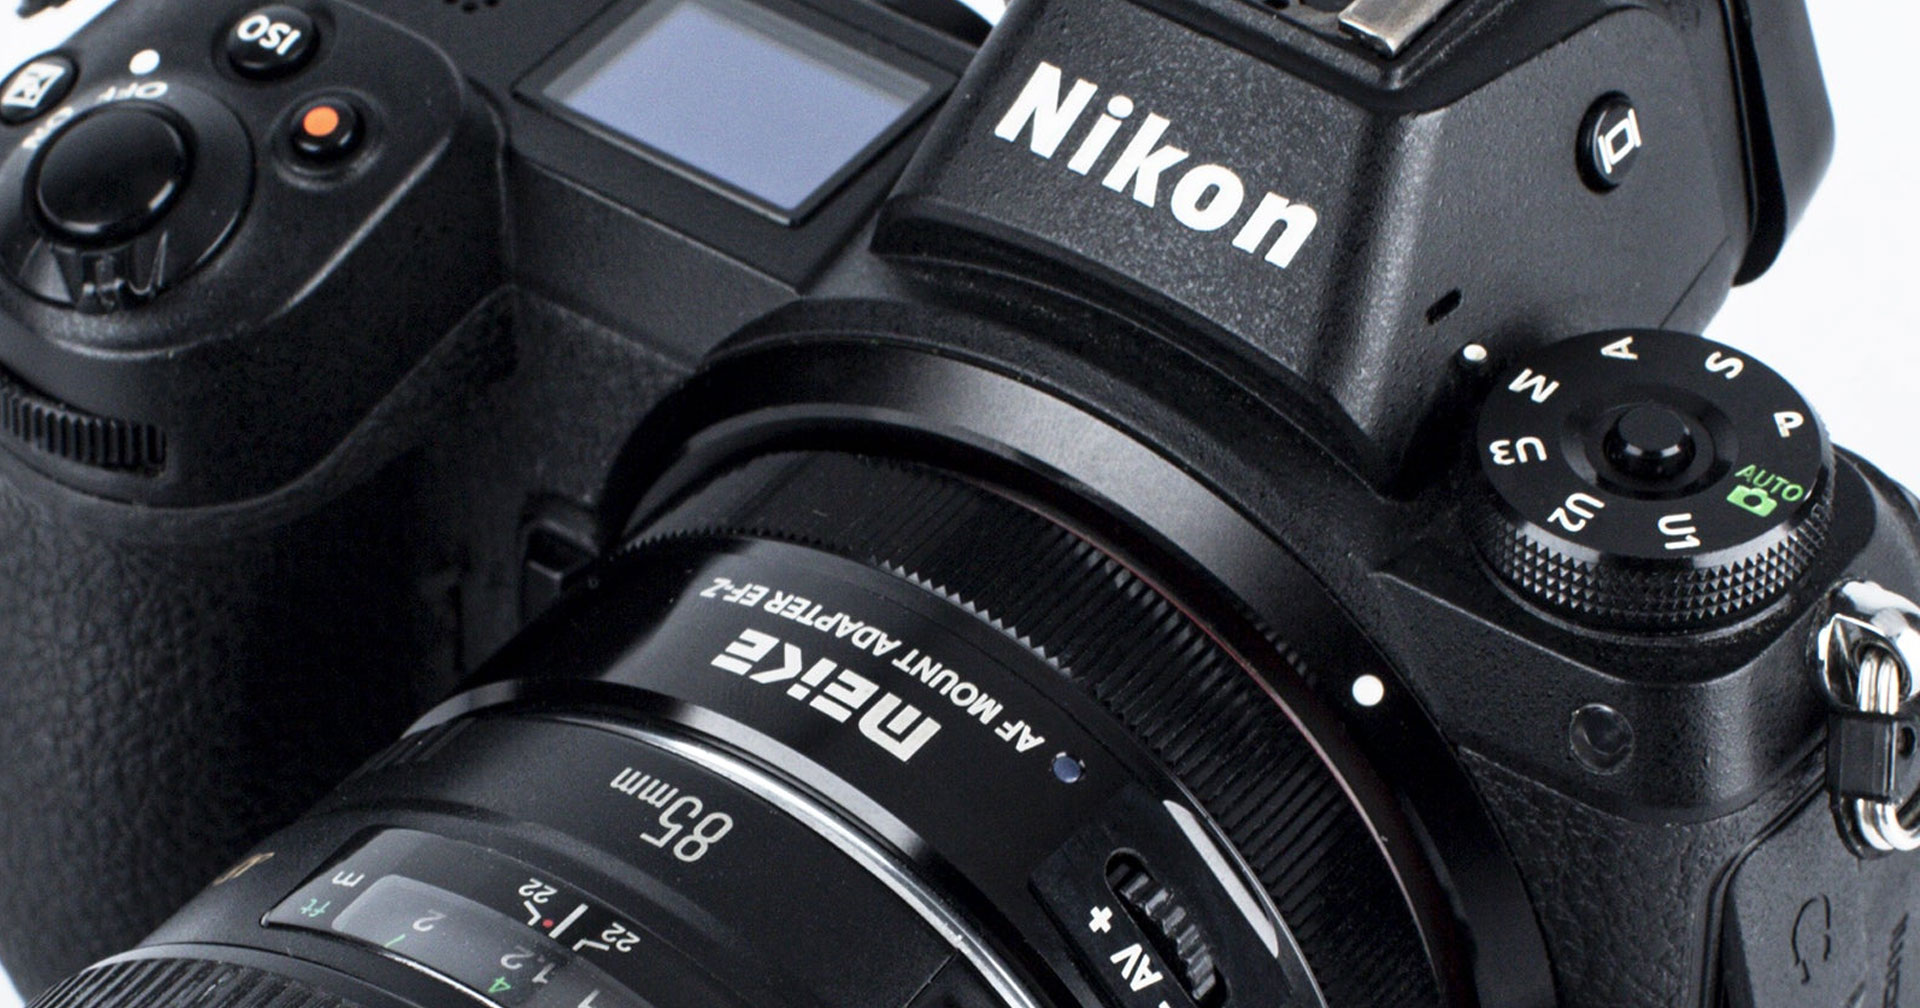 เปิดตัว Meike Canon EF to Nikon Z อะแดปเตอร์ Autofocus อีกทางเลือกสำหรับชาว Nikon Z